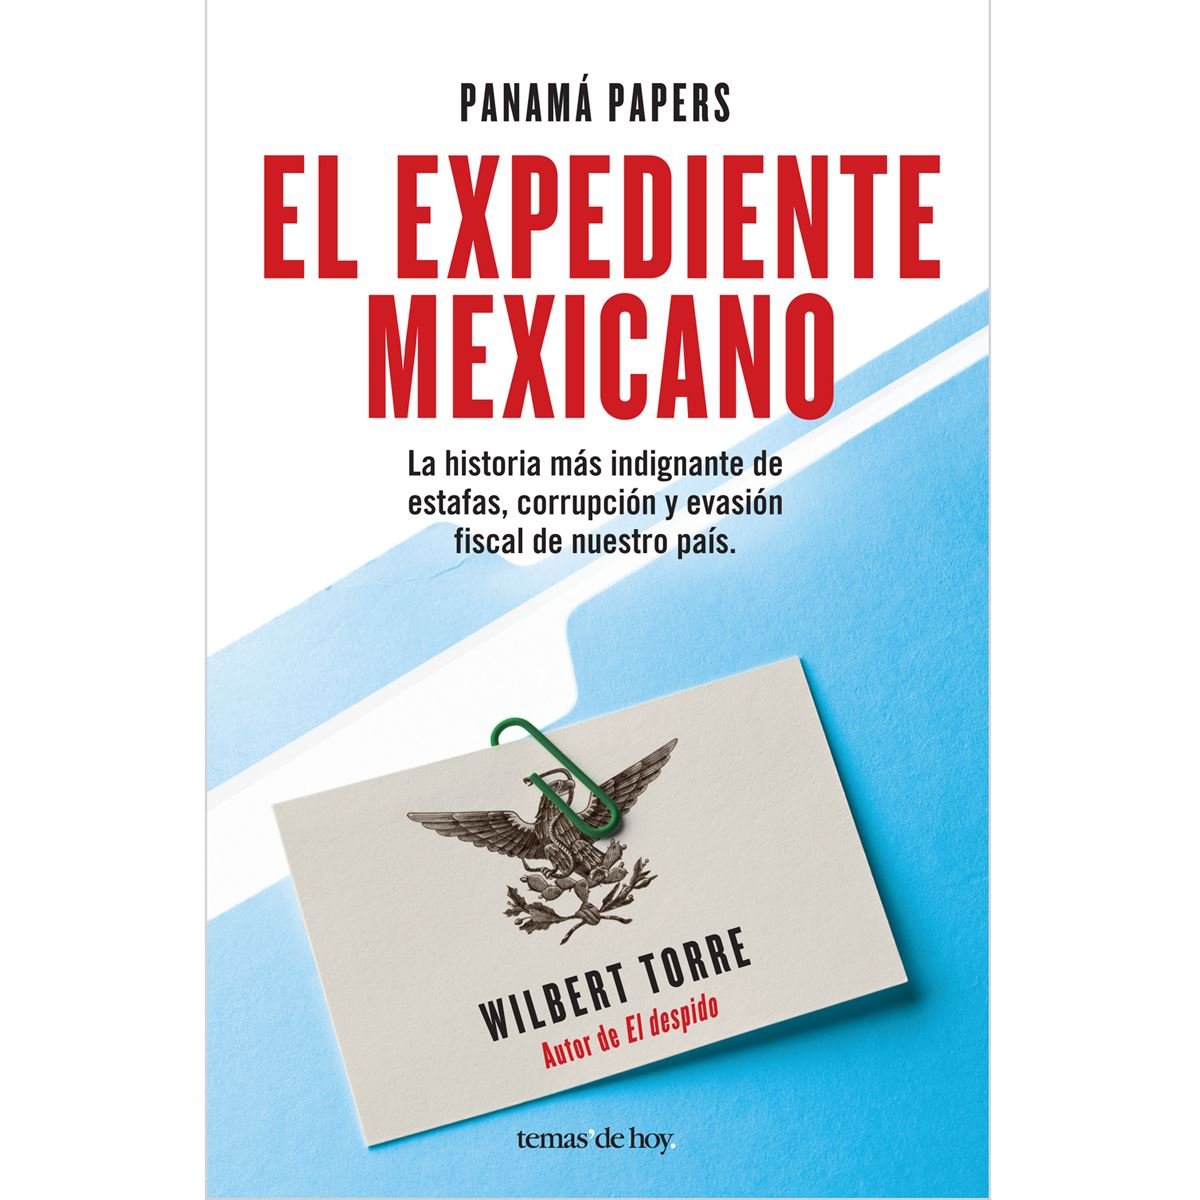 Panamá Papers (El expediente mexicano )